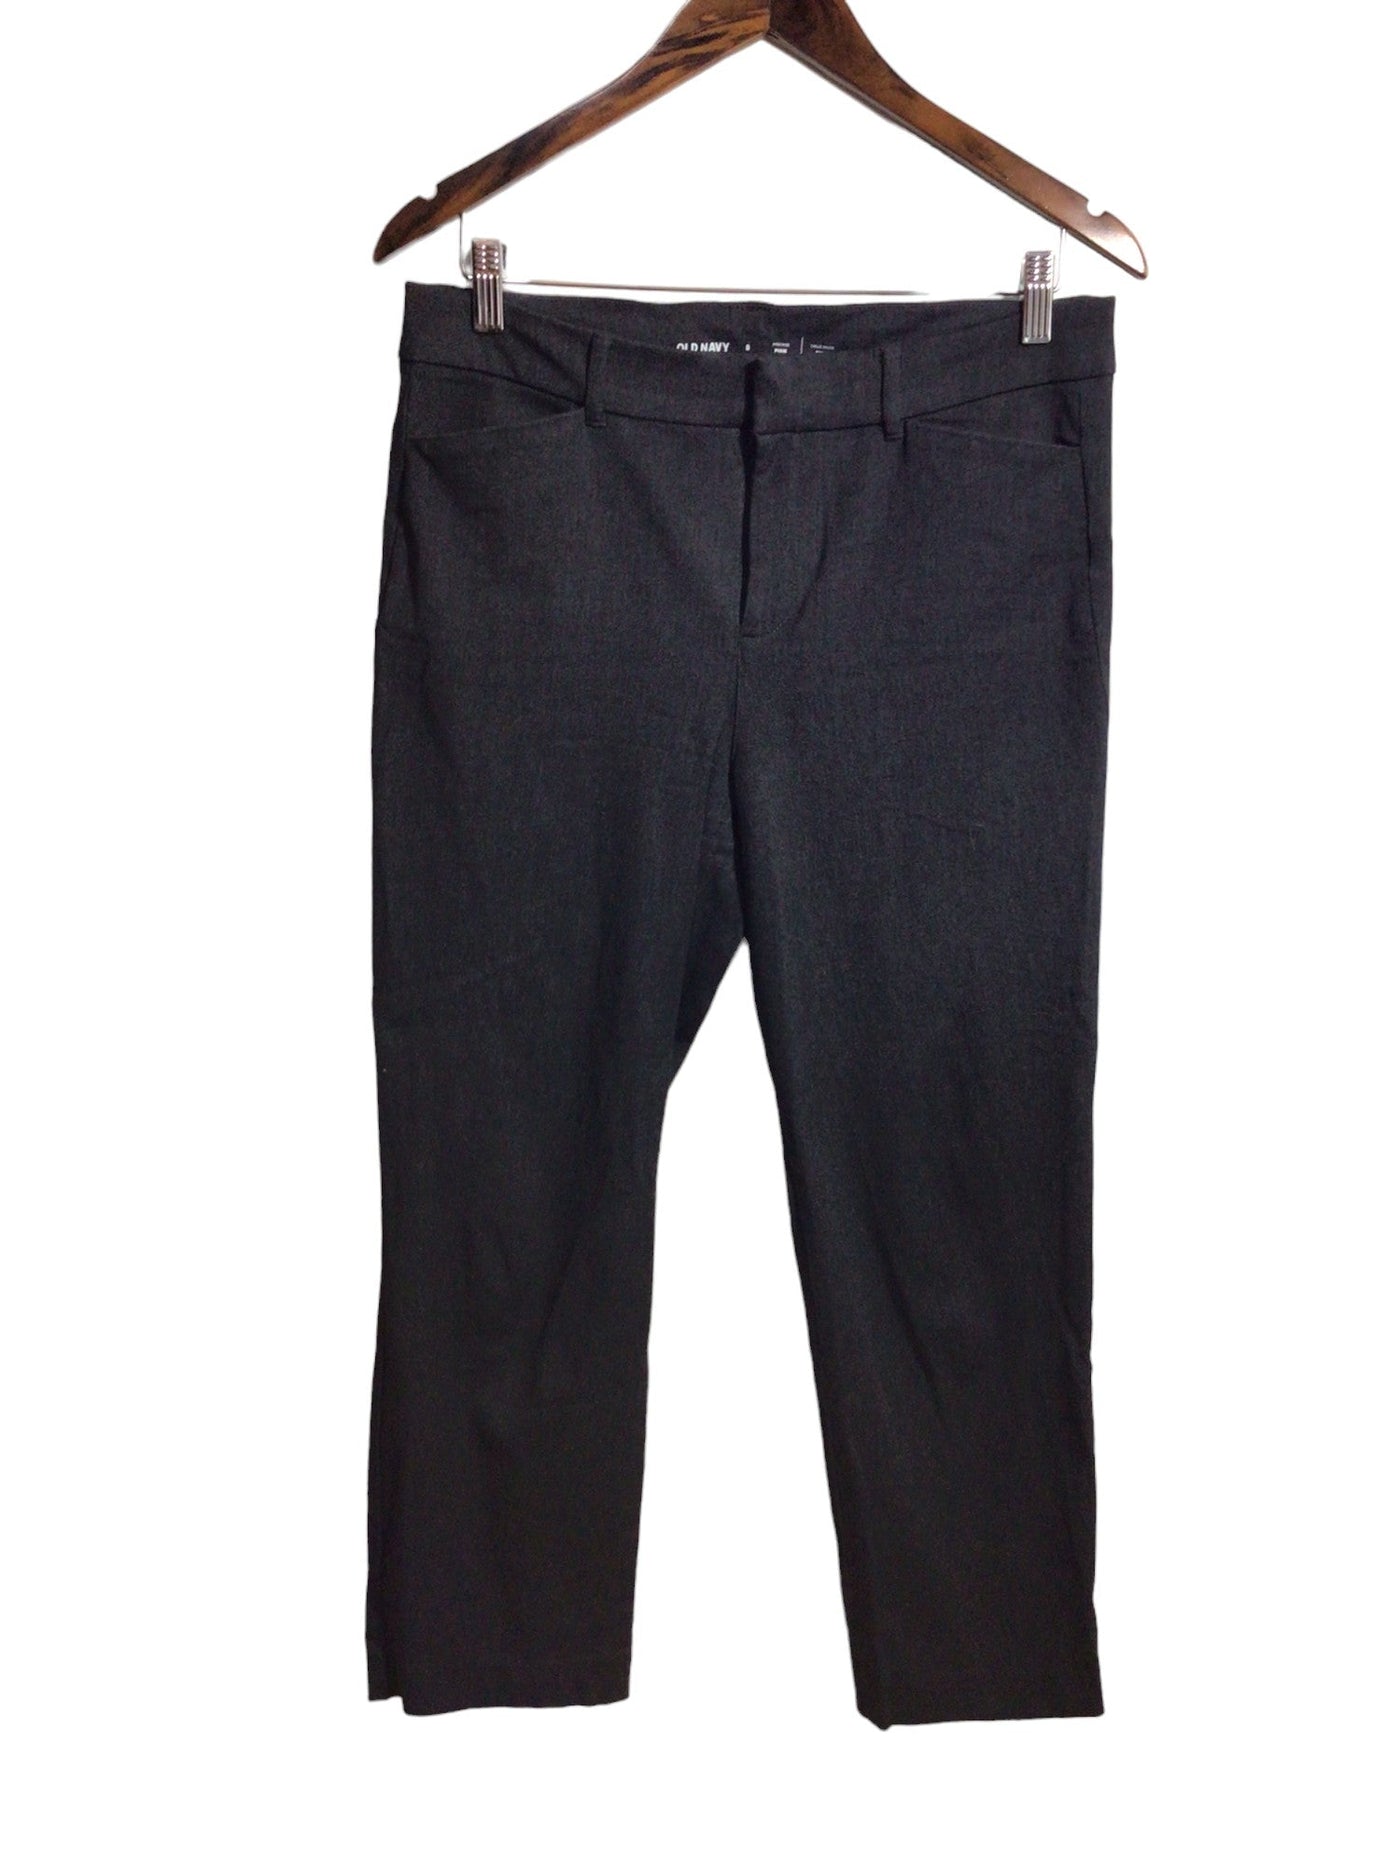 OLD NAVY Women Work Pants Regular fit in Gray - Size 8 | 13.99 $ KOOP